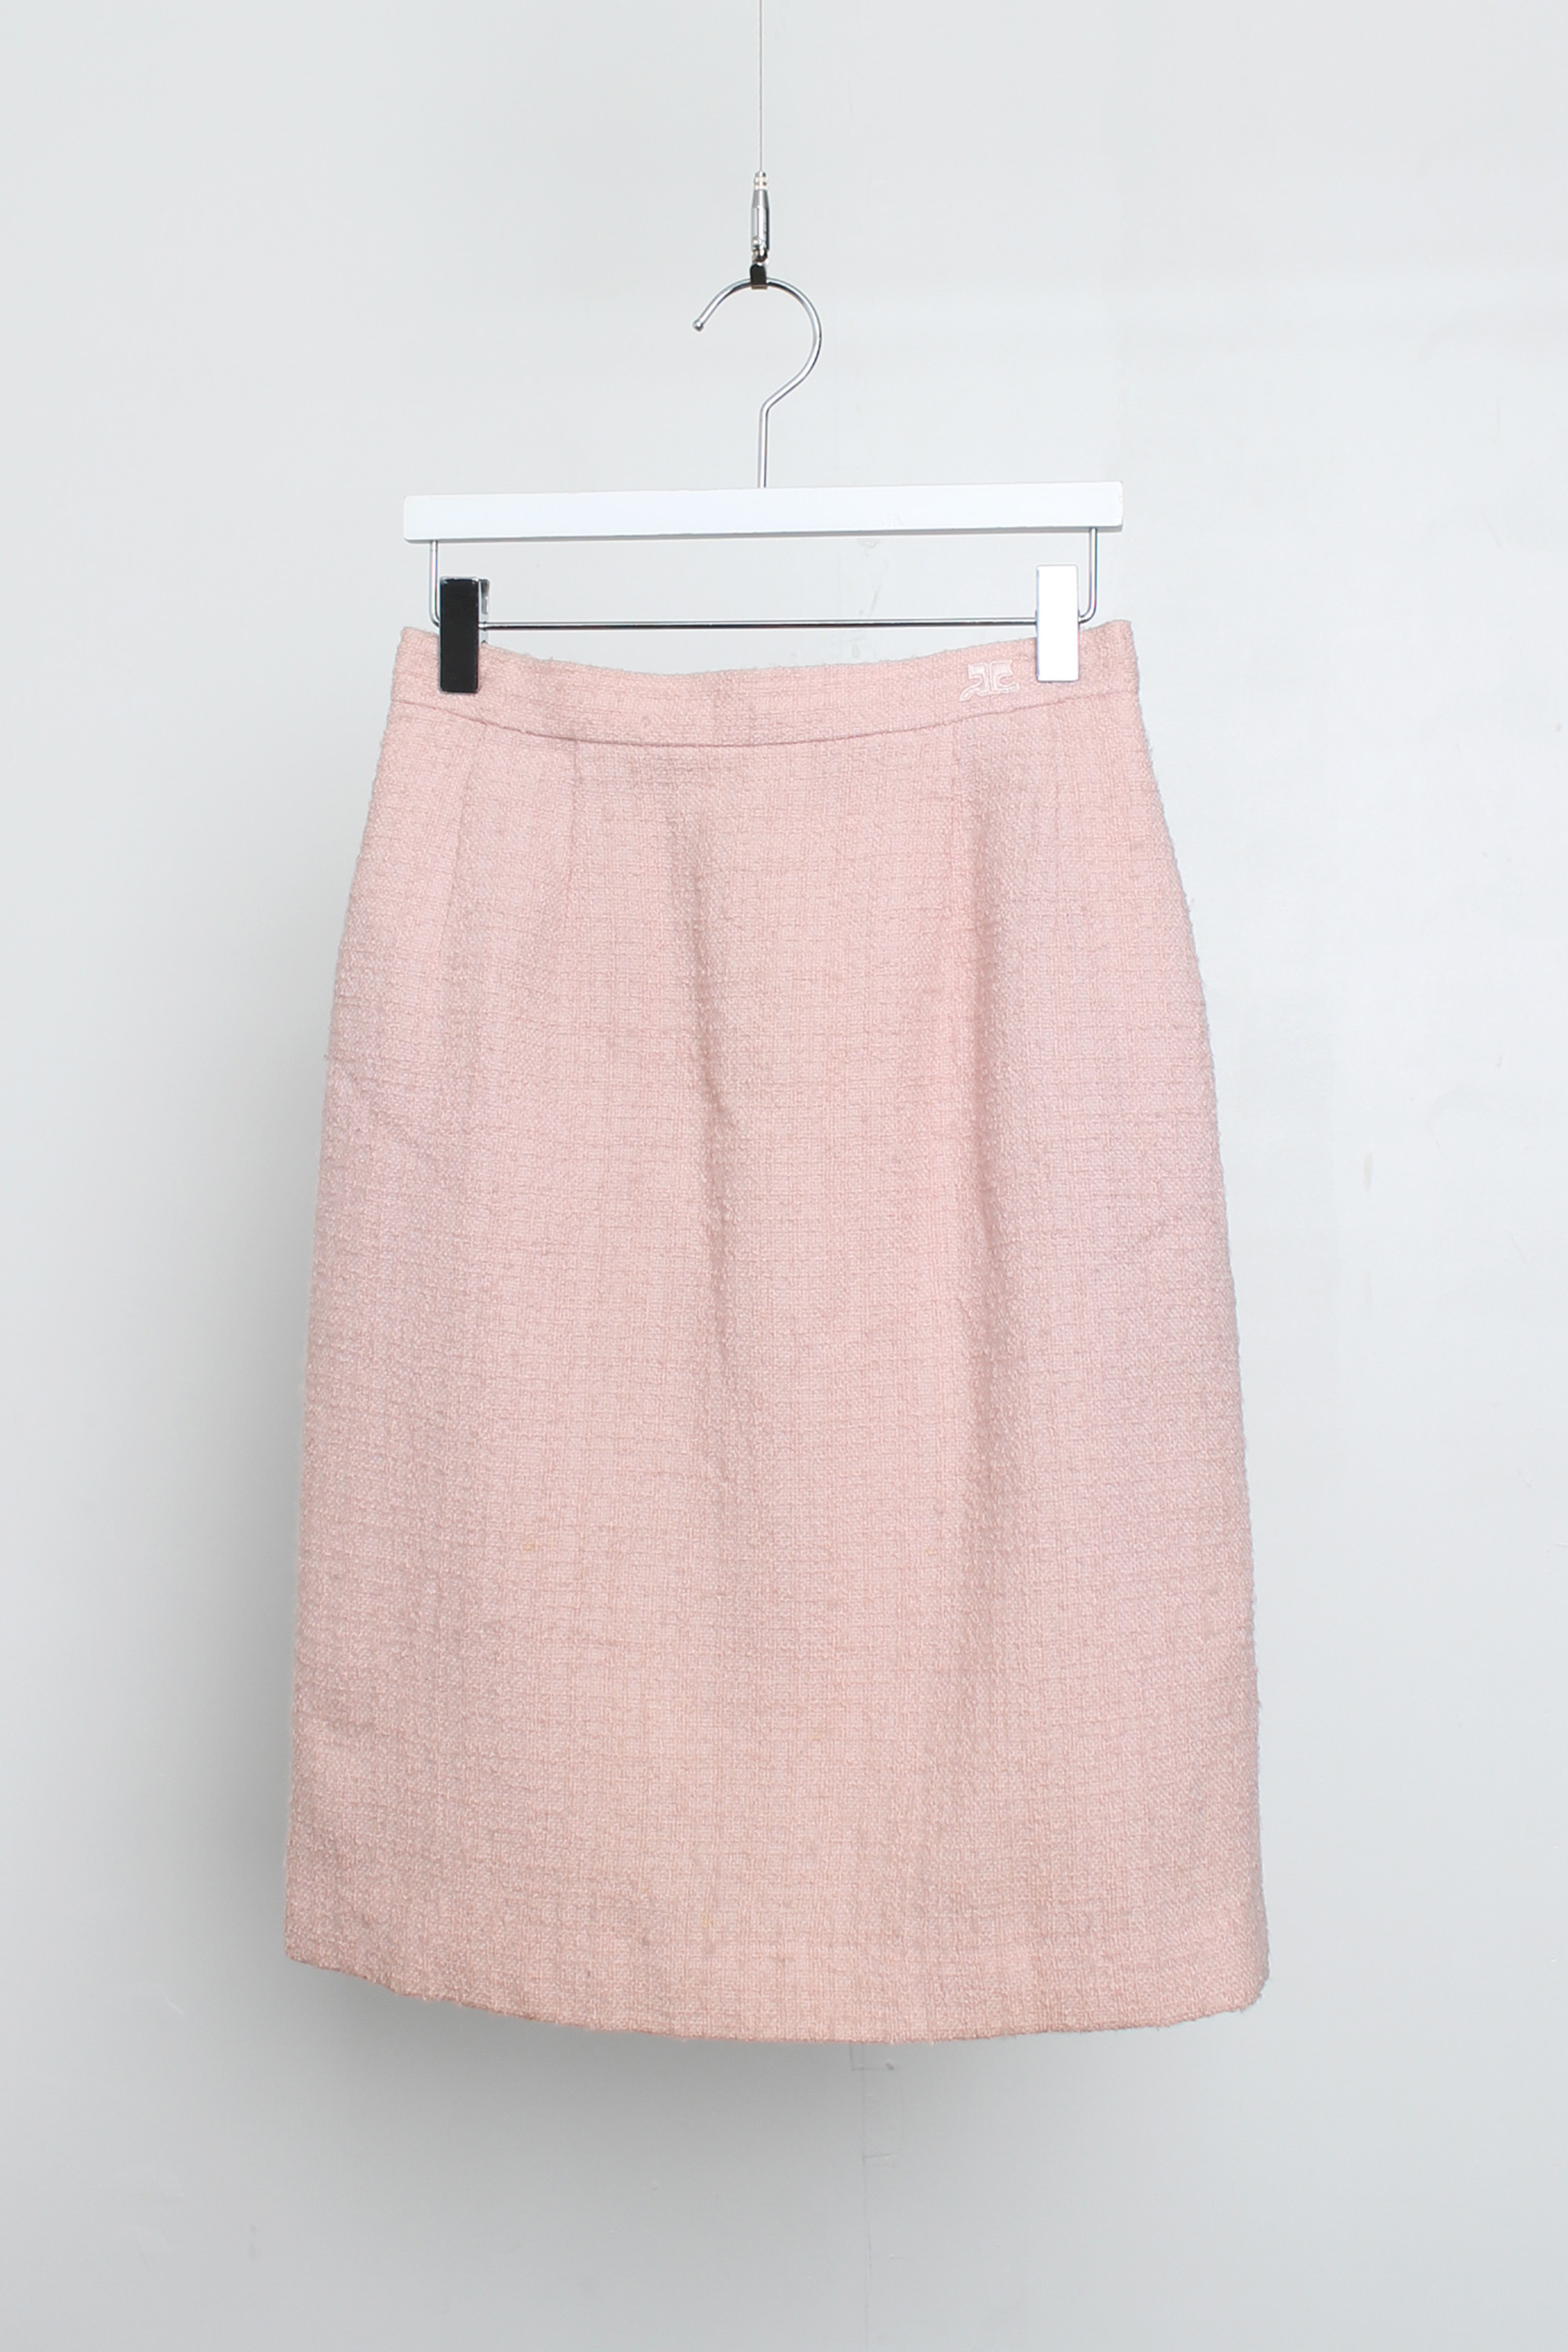 courreges tweed skirt